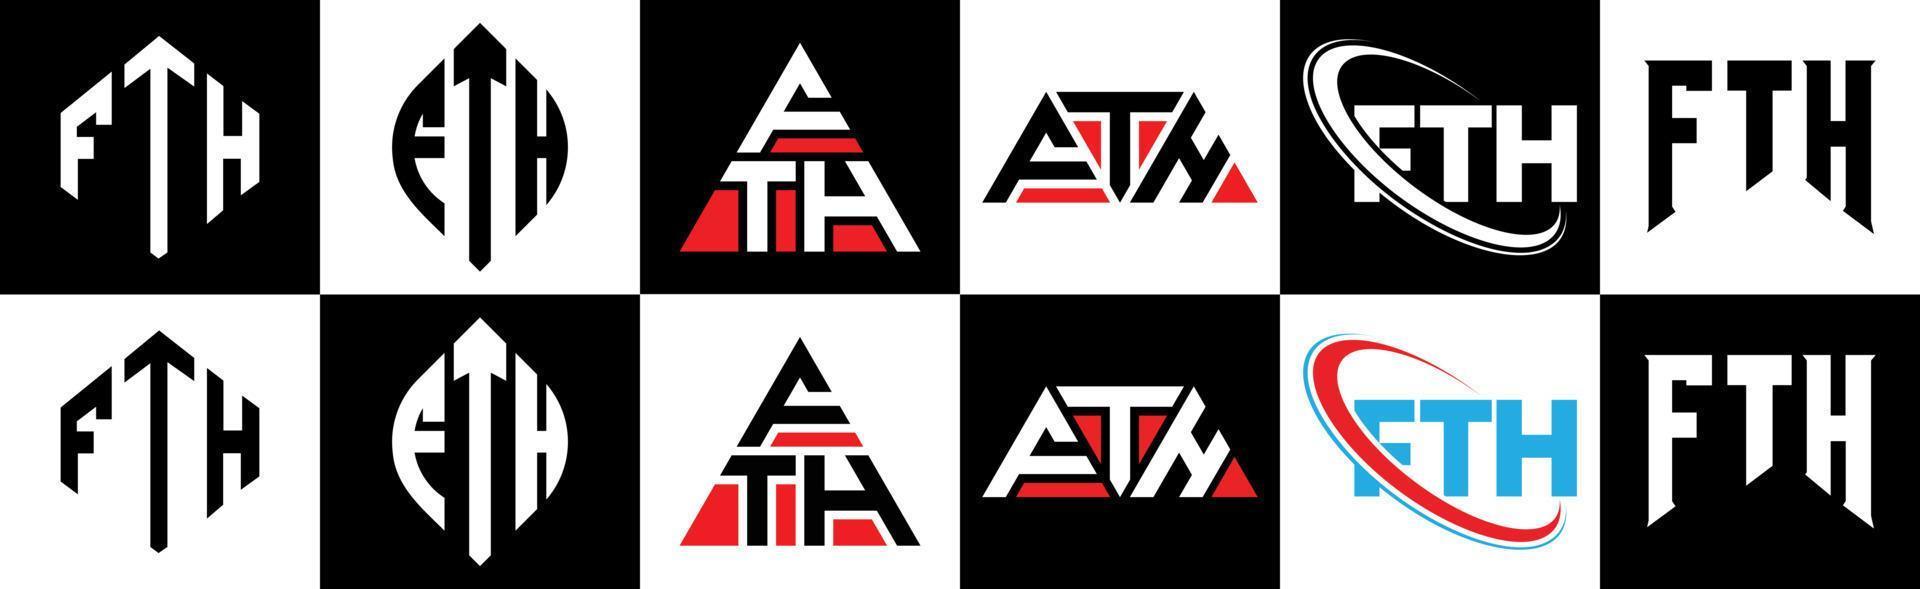 fth brief logo ontwerp in zes stijl. fth veelhoek, cirkel, driehoek, zeshoek, vlak en gemakkelijk stijl met zwart en wit kleur variatie brief logo reeks in een tekengebied. fth minimalistische en klassiek logo vector